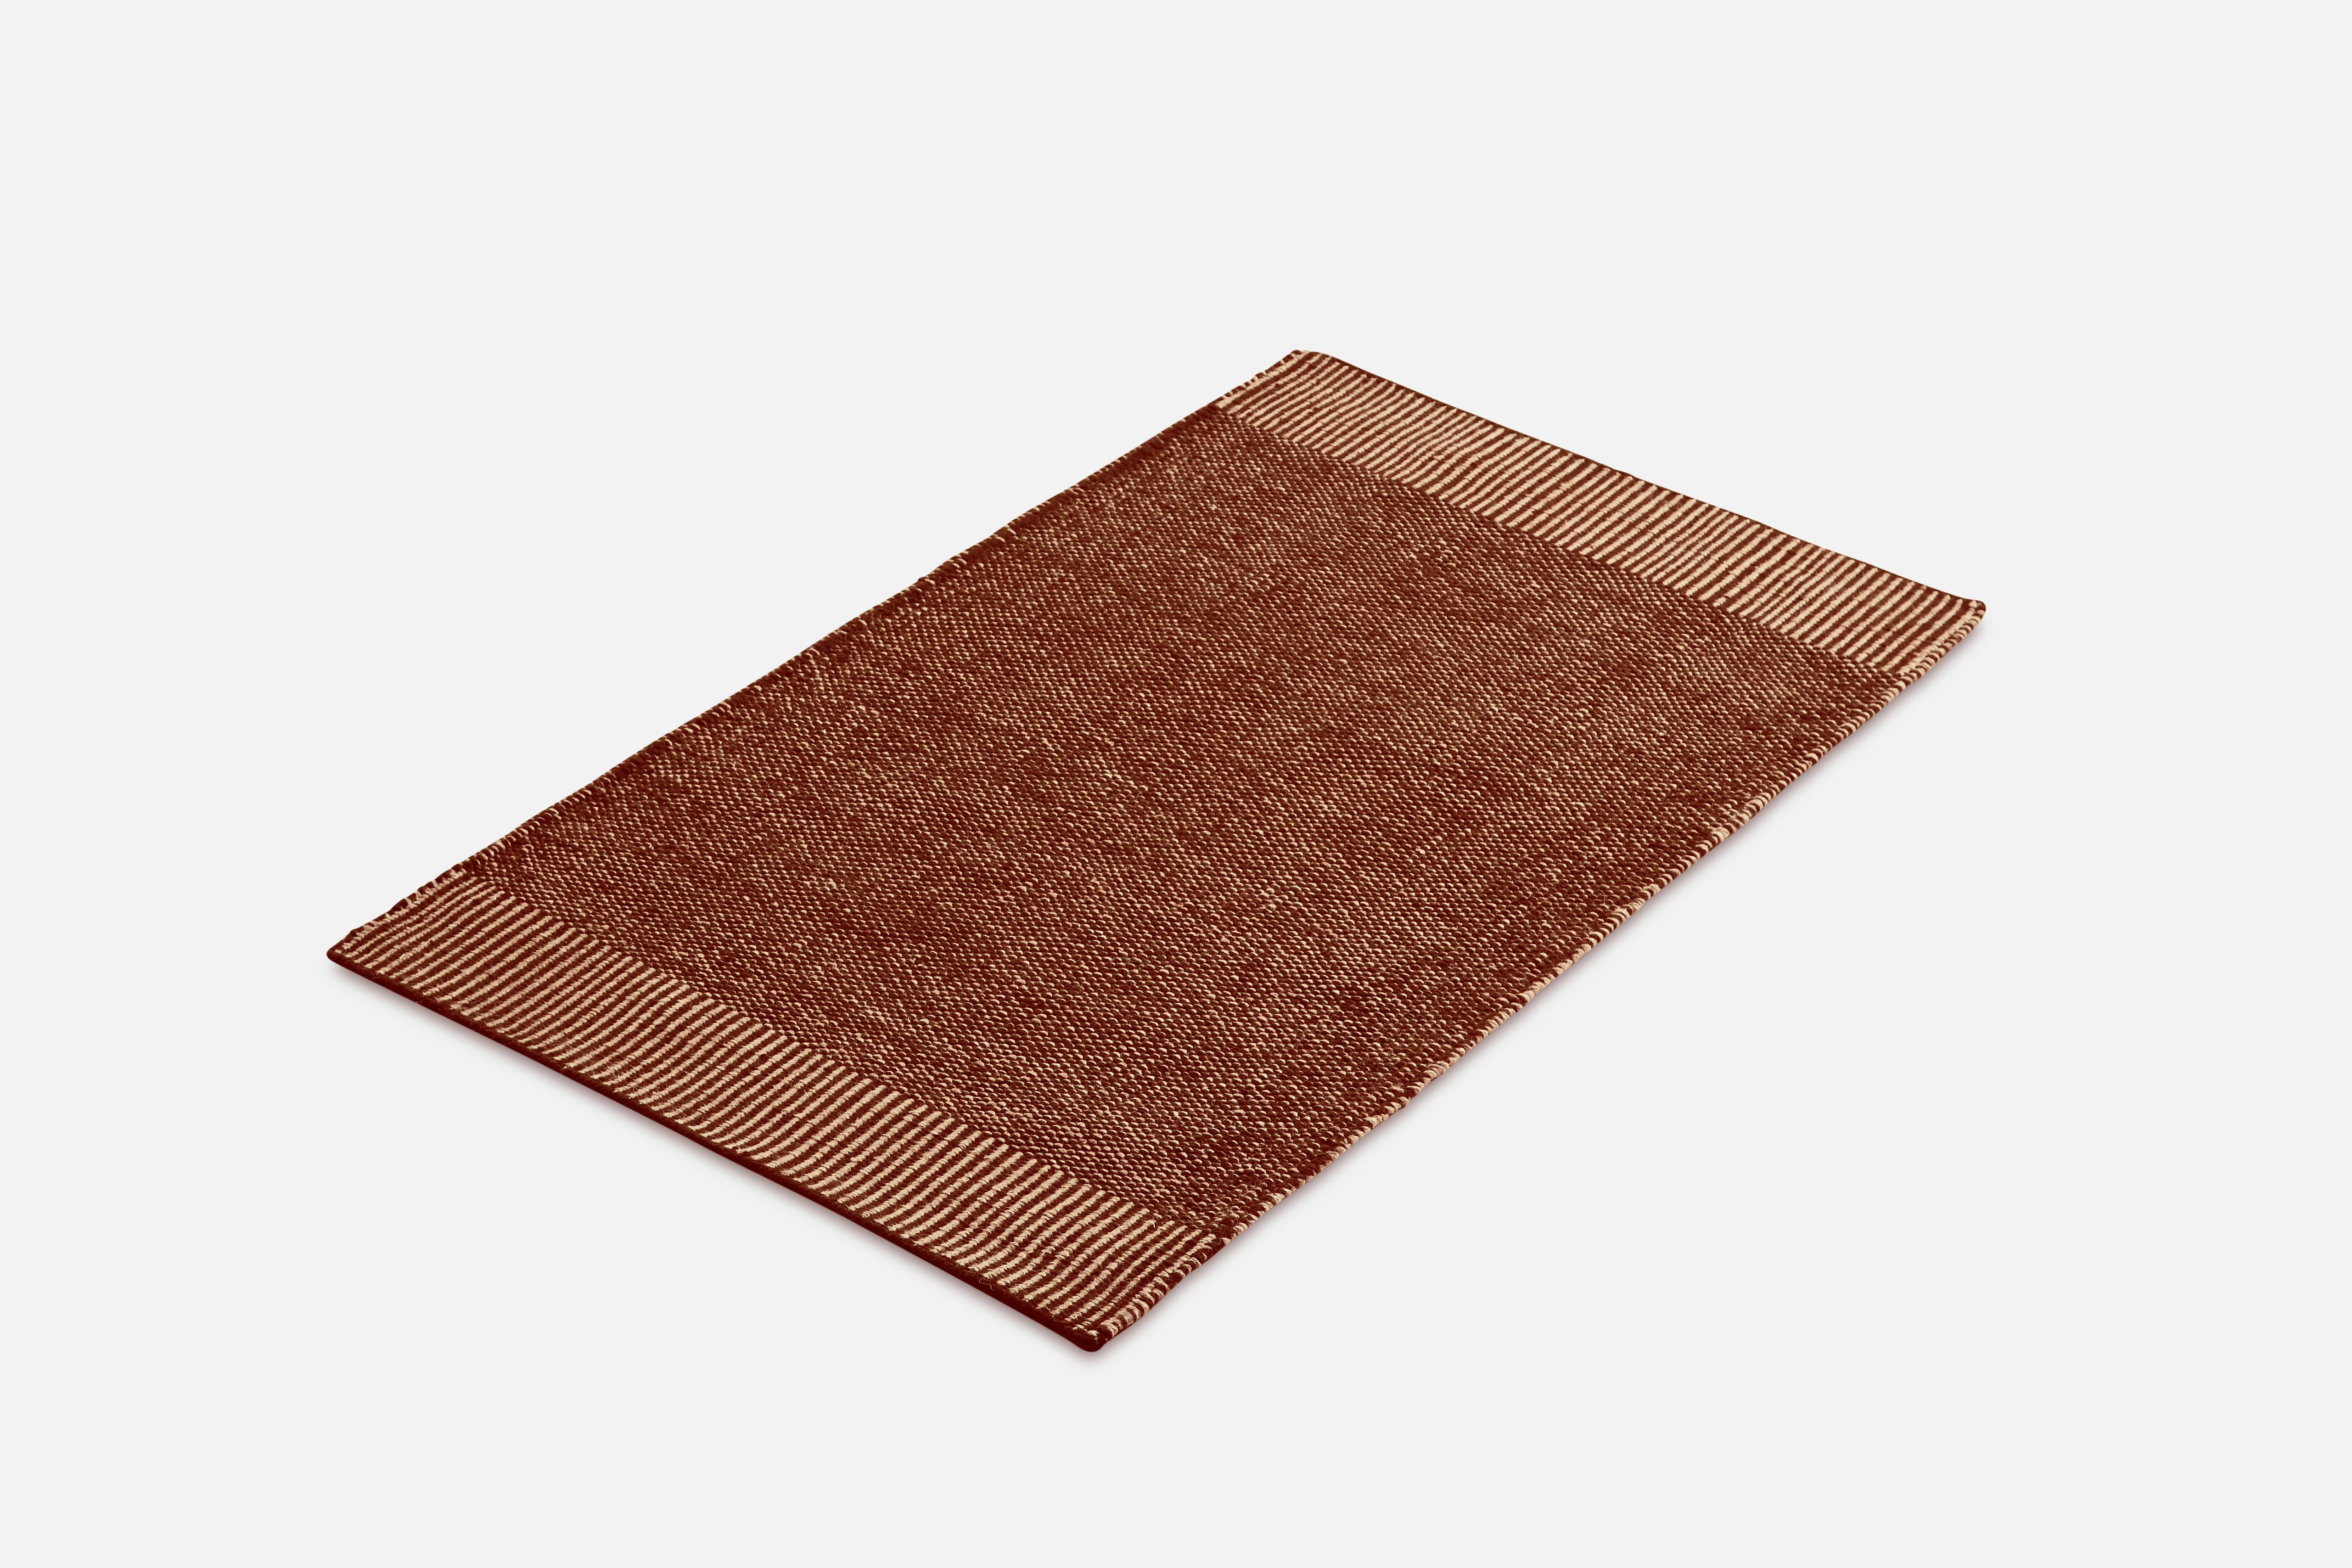 Kleiner rostiger teppich Rombo von Studio MLR
MATERIALIEN: 65% Wolle, 35% Jute.
Abmessungen: B 90 x L 140 cm
Erhältlich in 3 Größen: B90 x L140, B170 x L240, B75 x L200 cm.
Erhältlich in Grau, Moosgrün und Rost.

Rombo zeichnet sich durch die